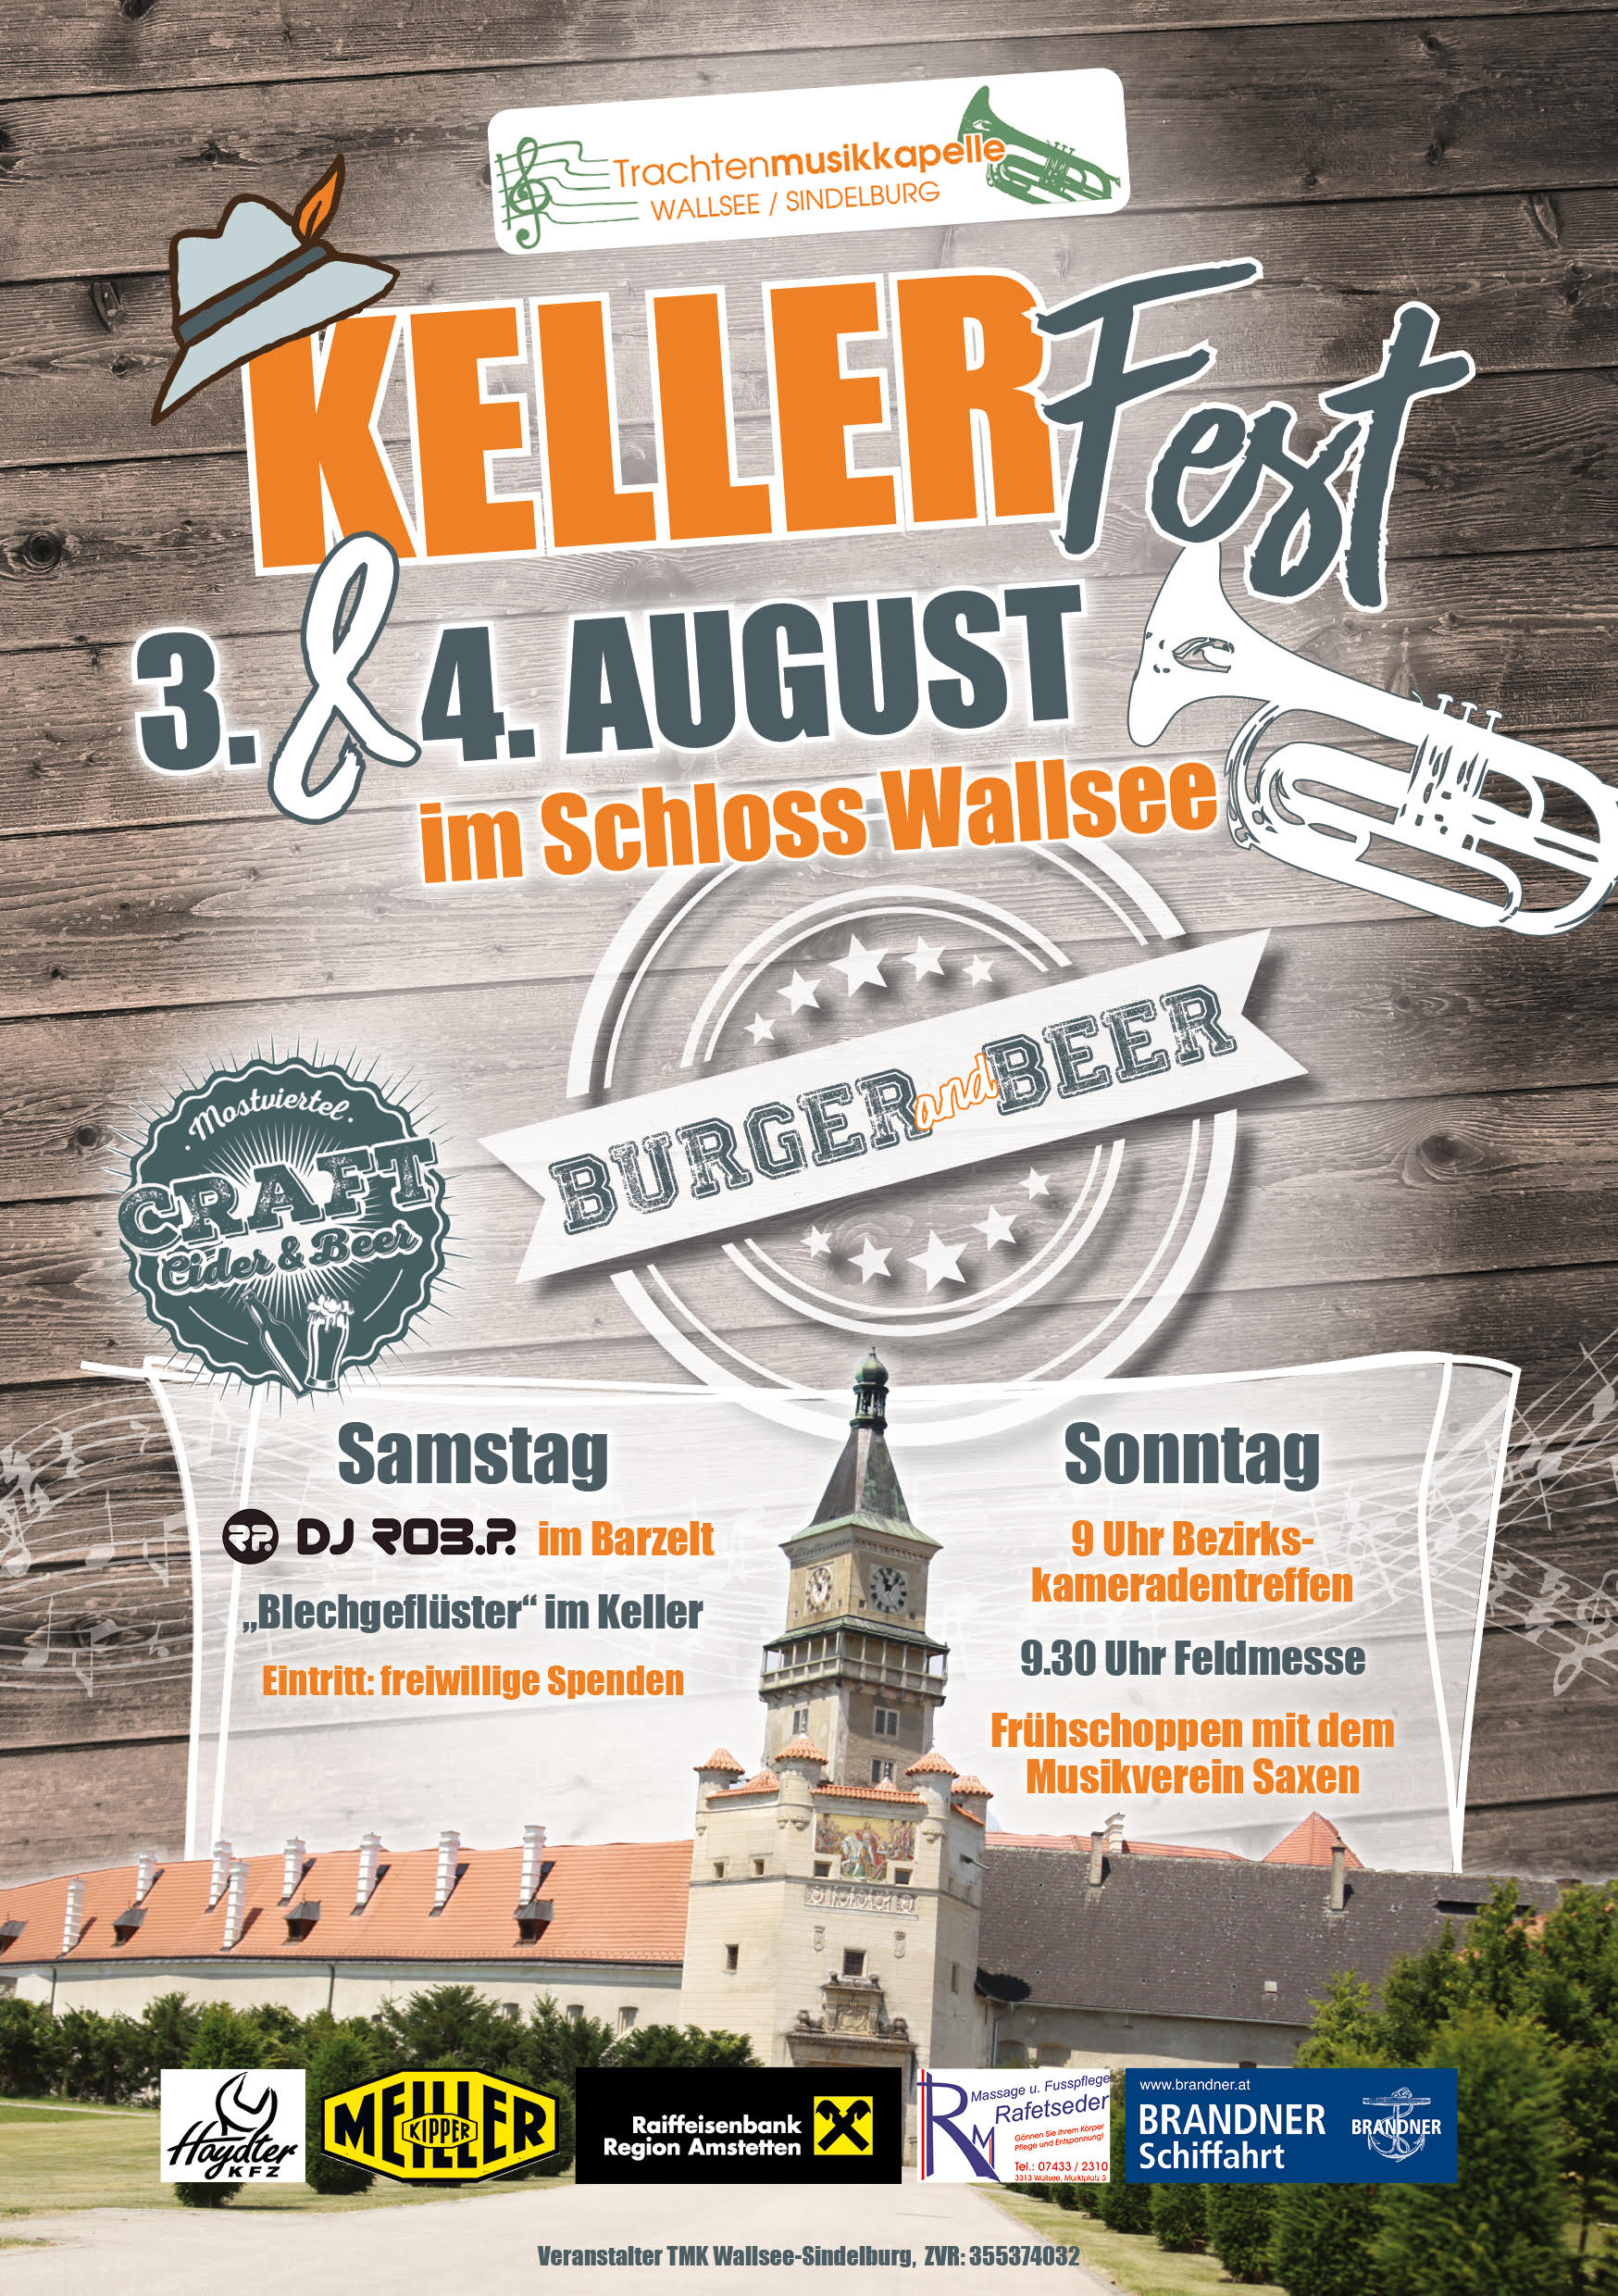 Kellerfest im Schloss Wallsee